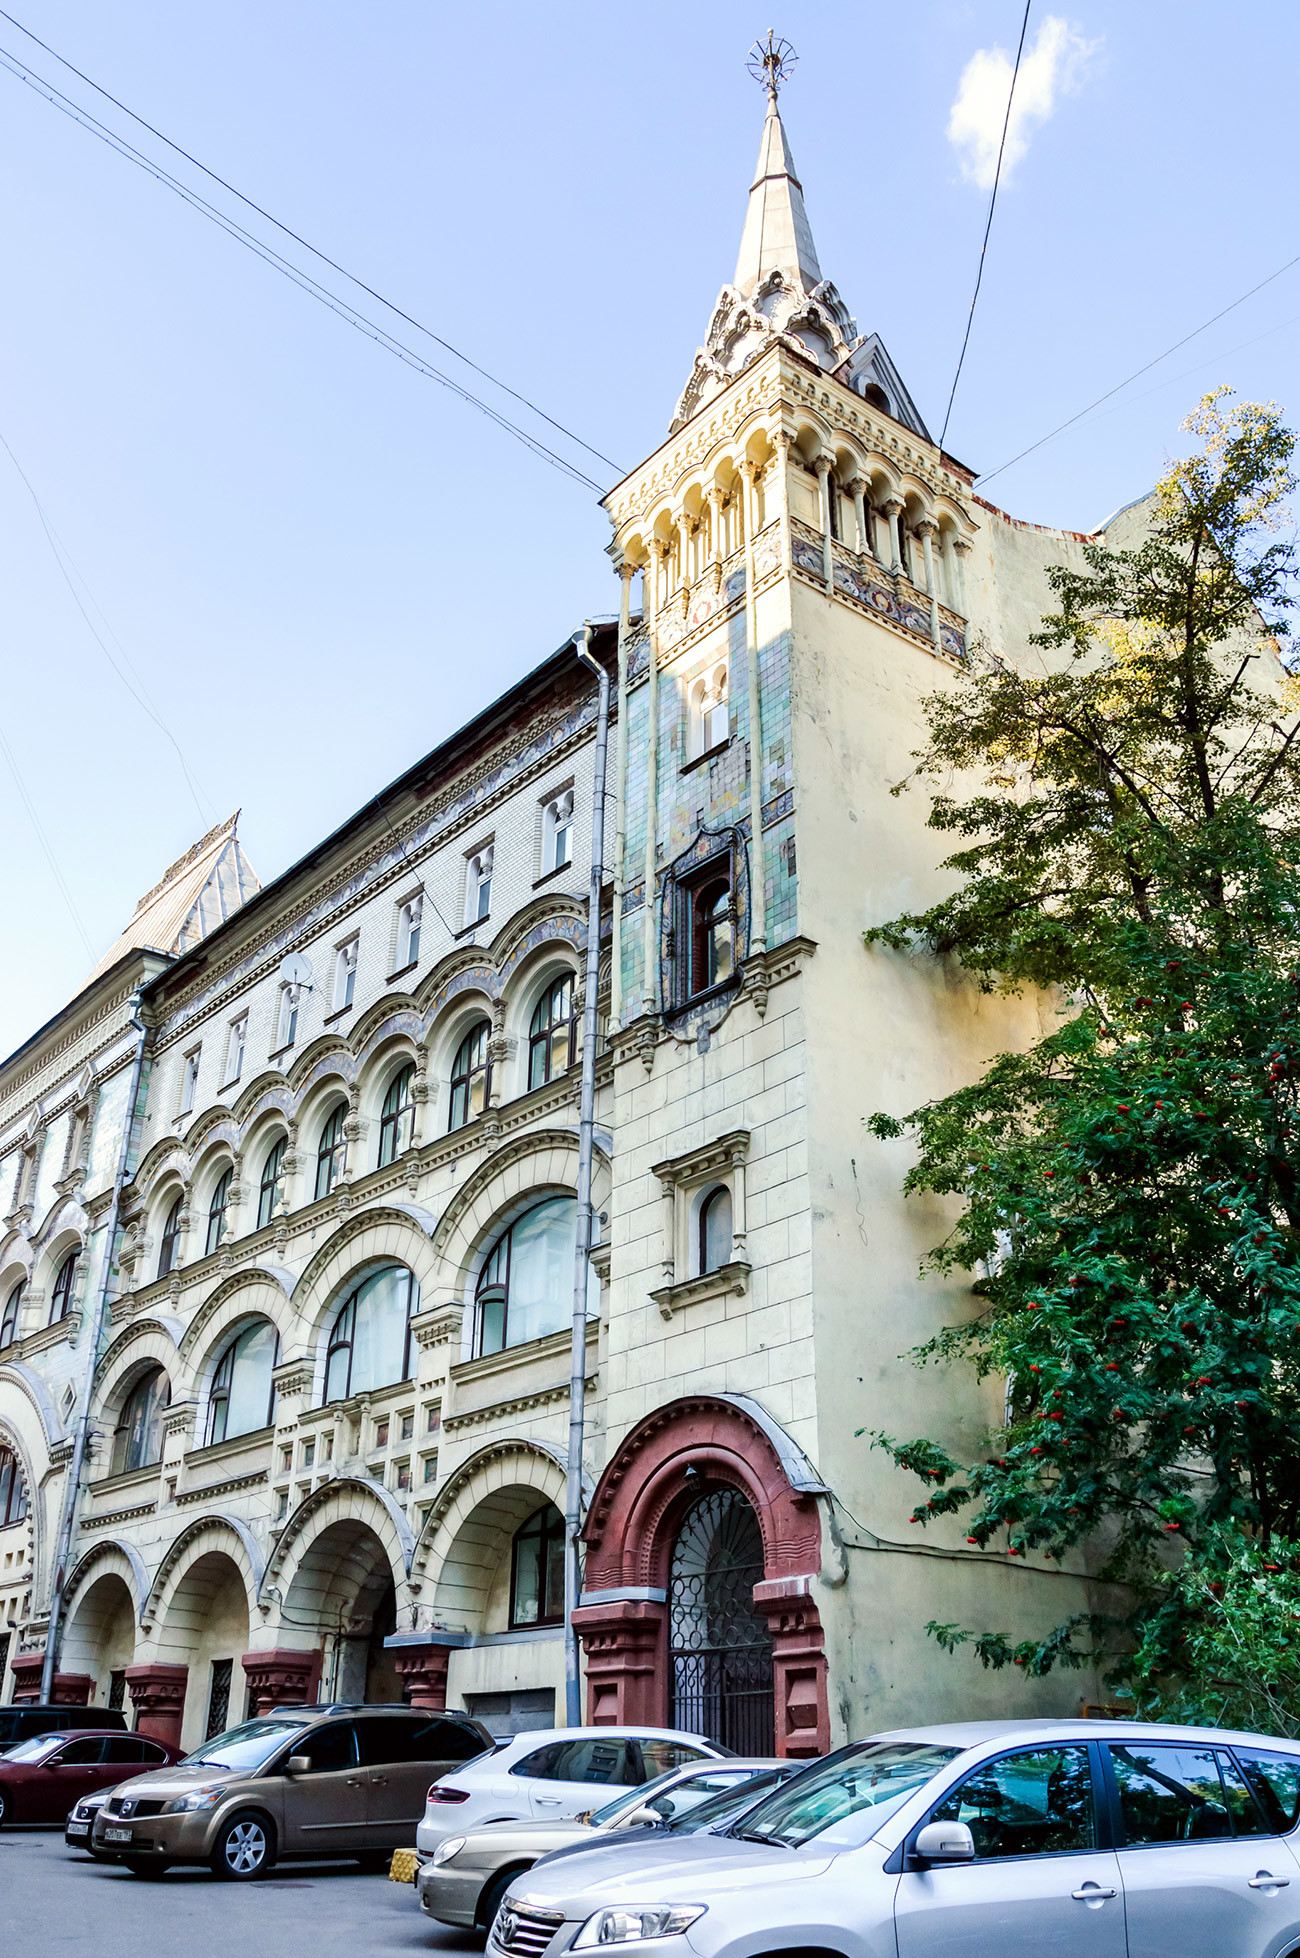 Atap pelana, menara di sudut-sudut, ubin multikromatik pada fasad — blok apartemen milik Biara Savvino-Storozhevsky ini dibangun pada awal abad ke-20 dengan gaya pseudo-Rusia yang modis.